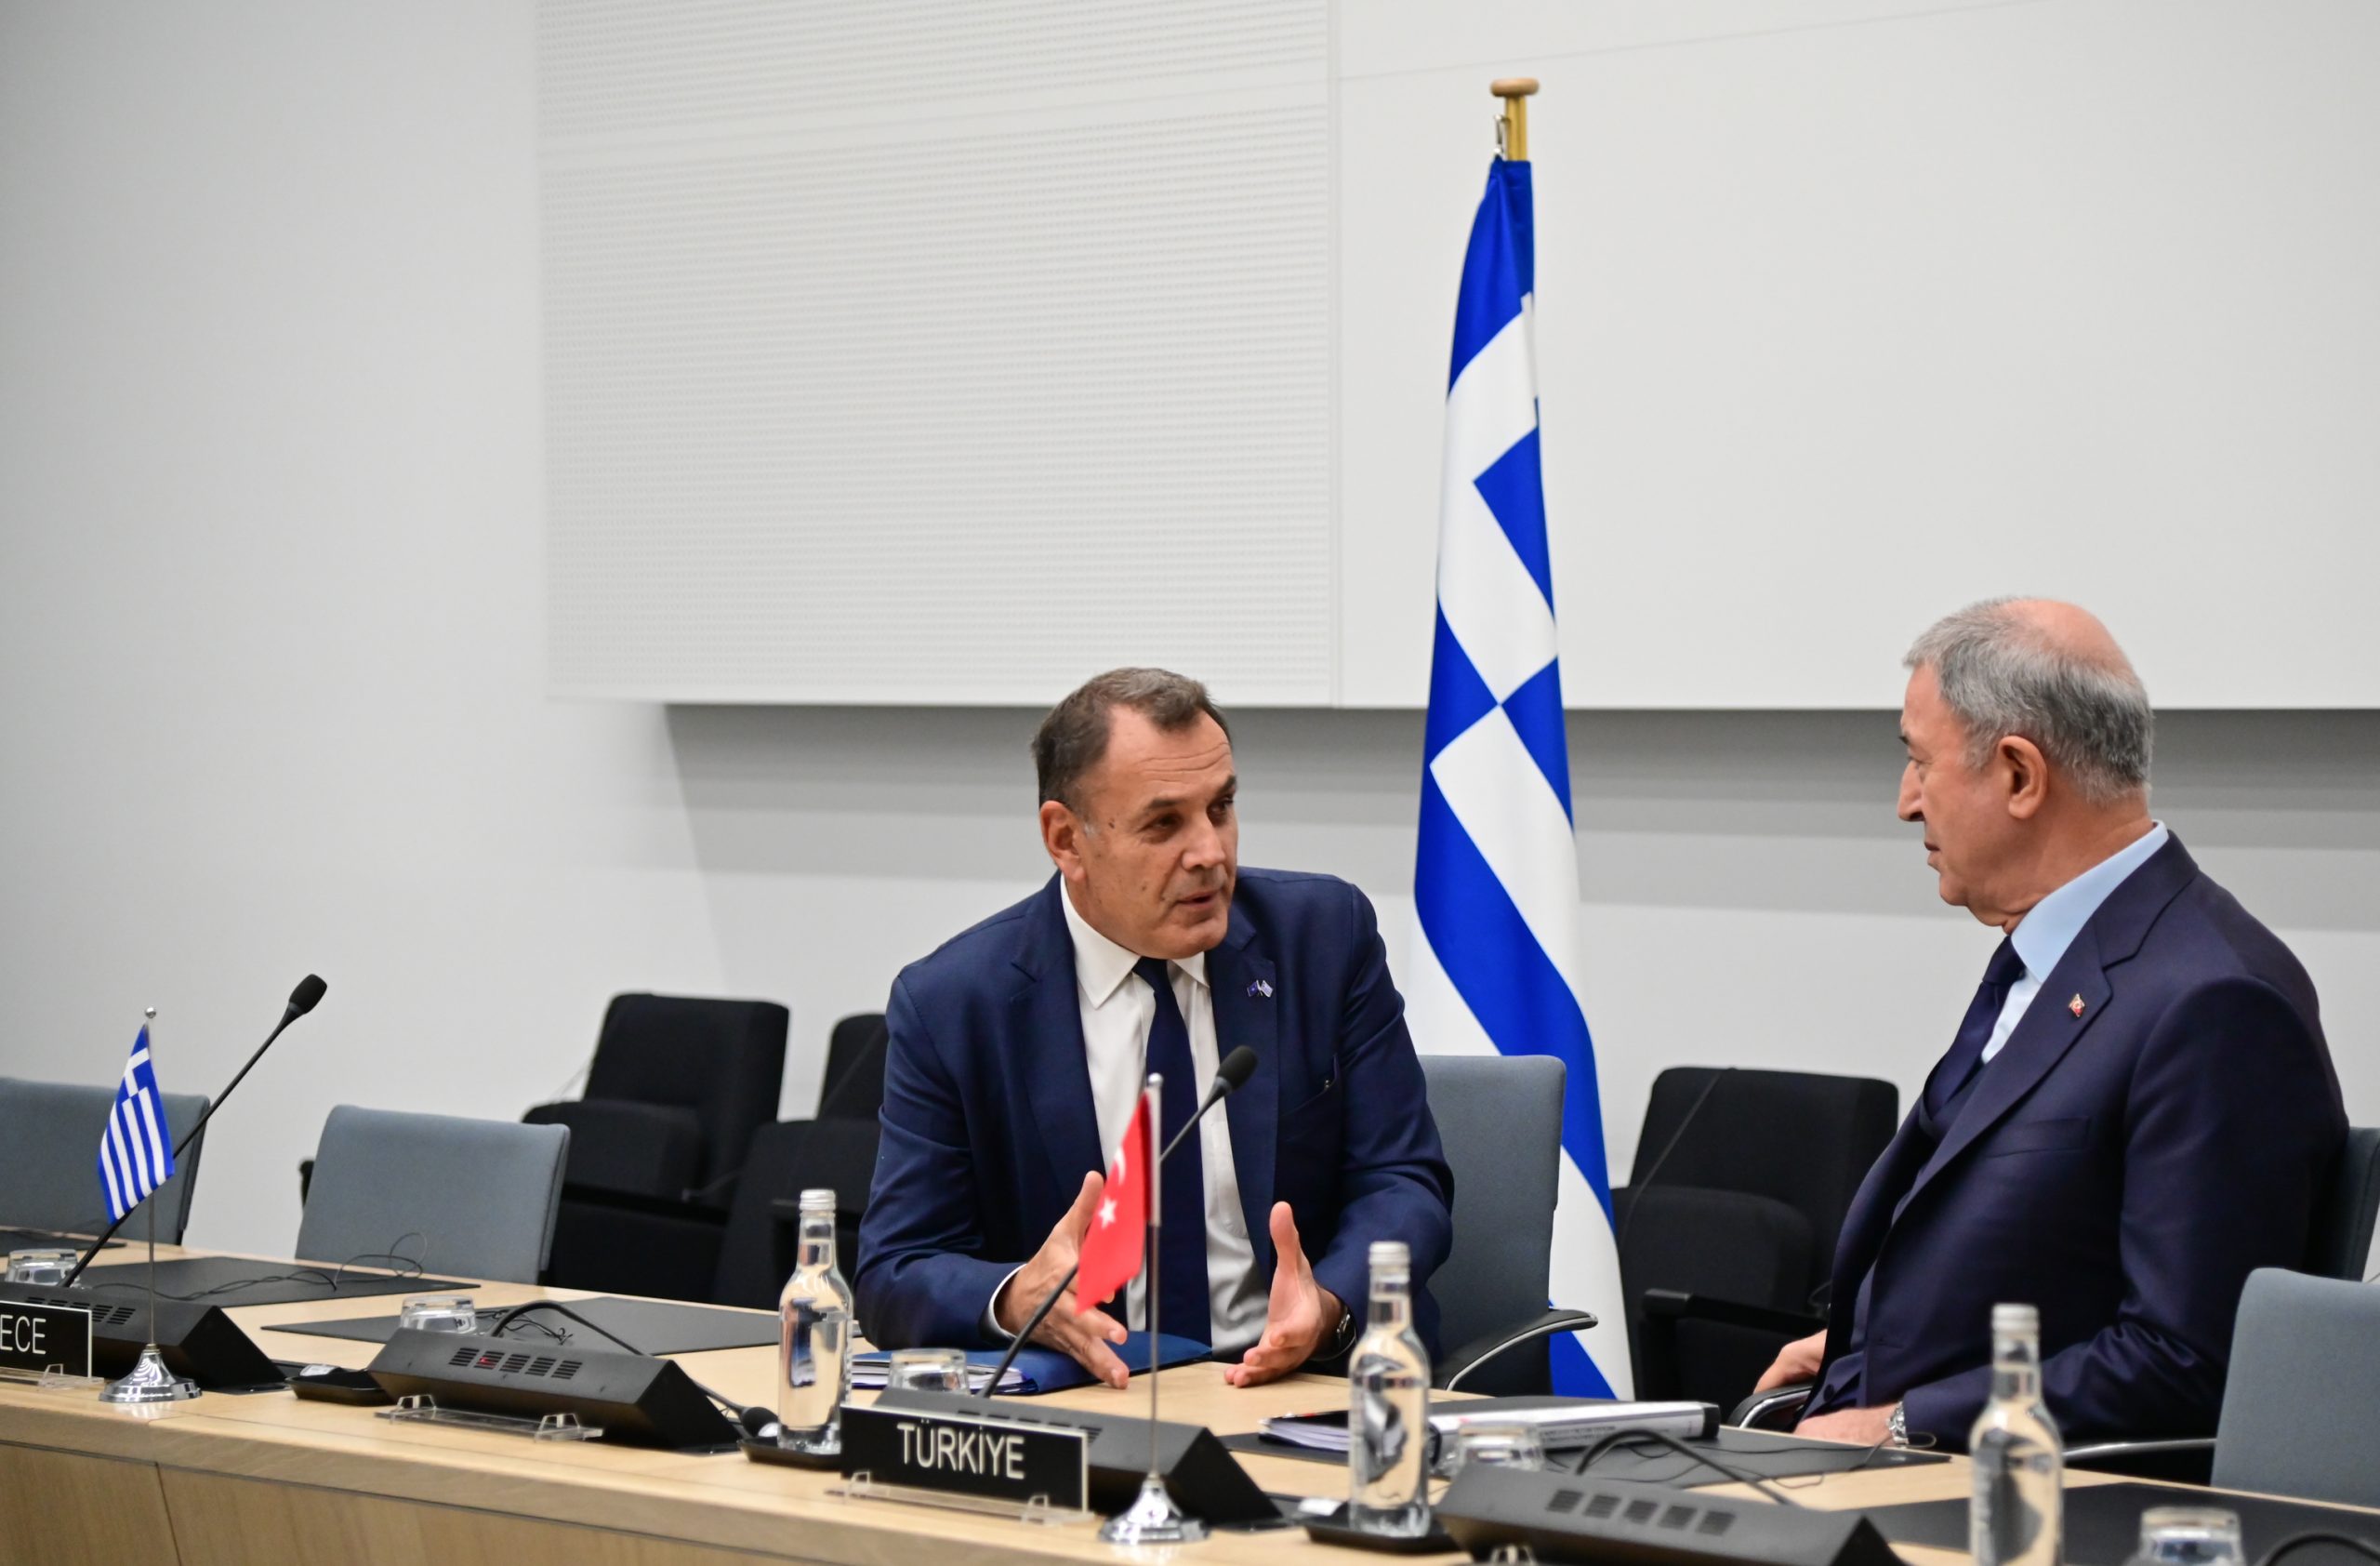 Ν. Παναγιωτόπουλος: Ισχυρή η θέληση Γαλλίας και Ελλάδας για σταθερότητα και ευημερία στην Αν. Μεσόγειο